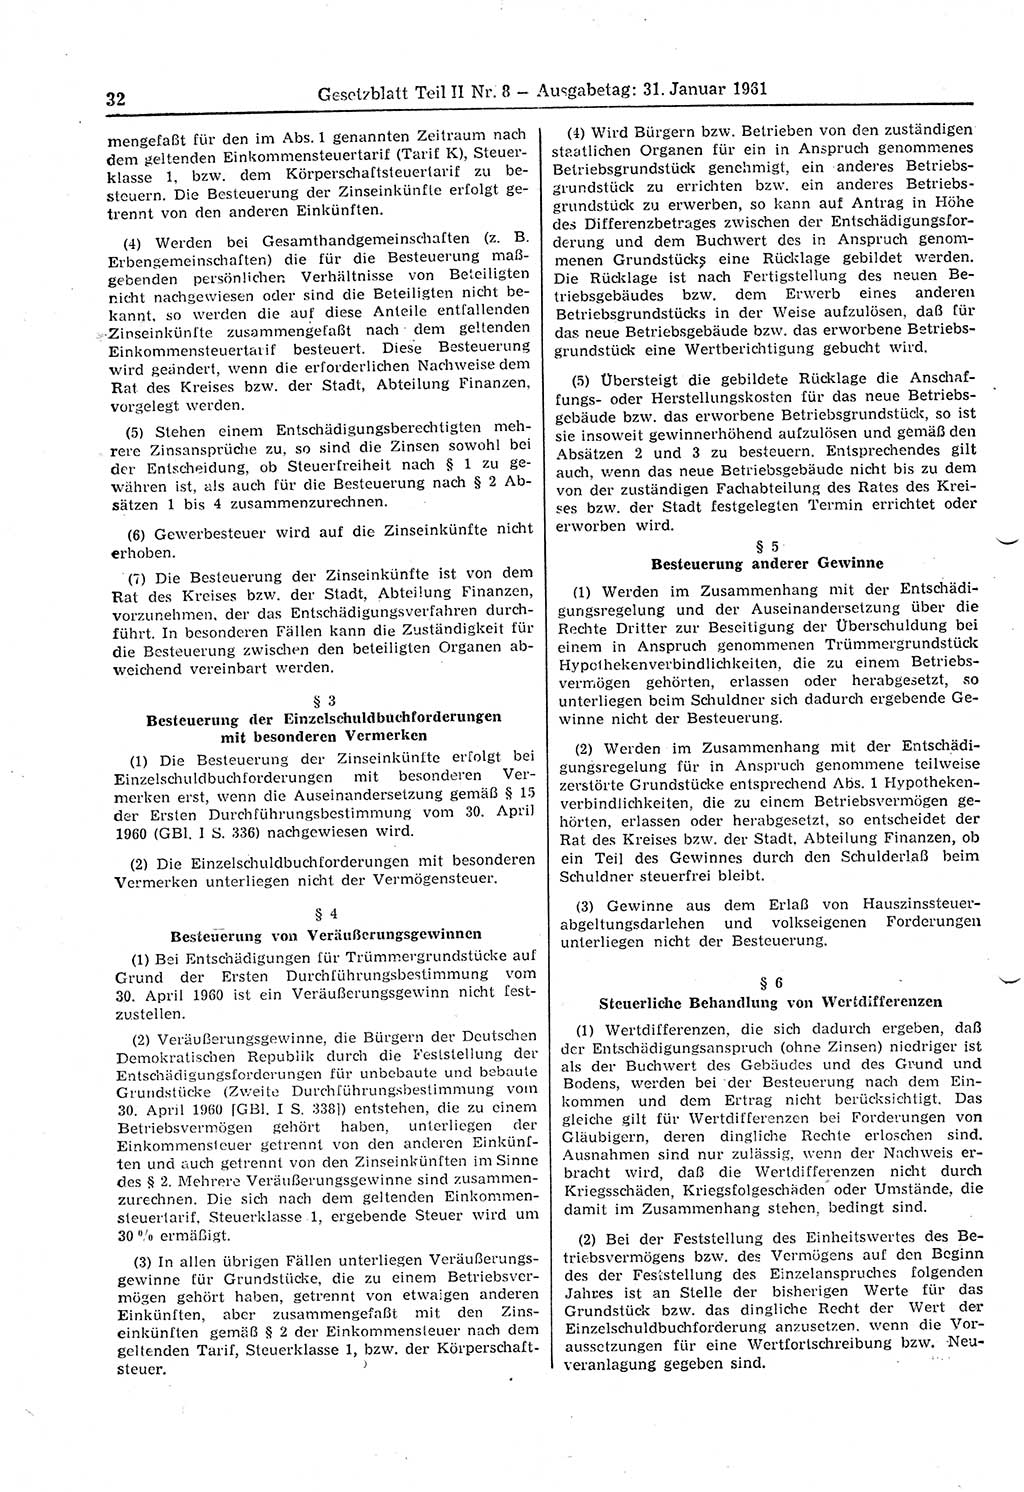 Gesetzblatt (GBl.) der Deutschen Demokratischen Republik (DDR) Teil ⅠⅠ 1961, Seite 32 (GBl. DDR ⅠⅠ 1961, S. 32)